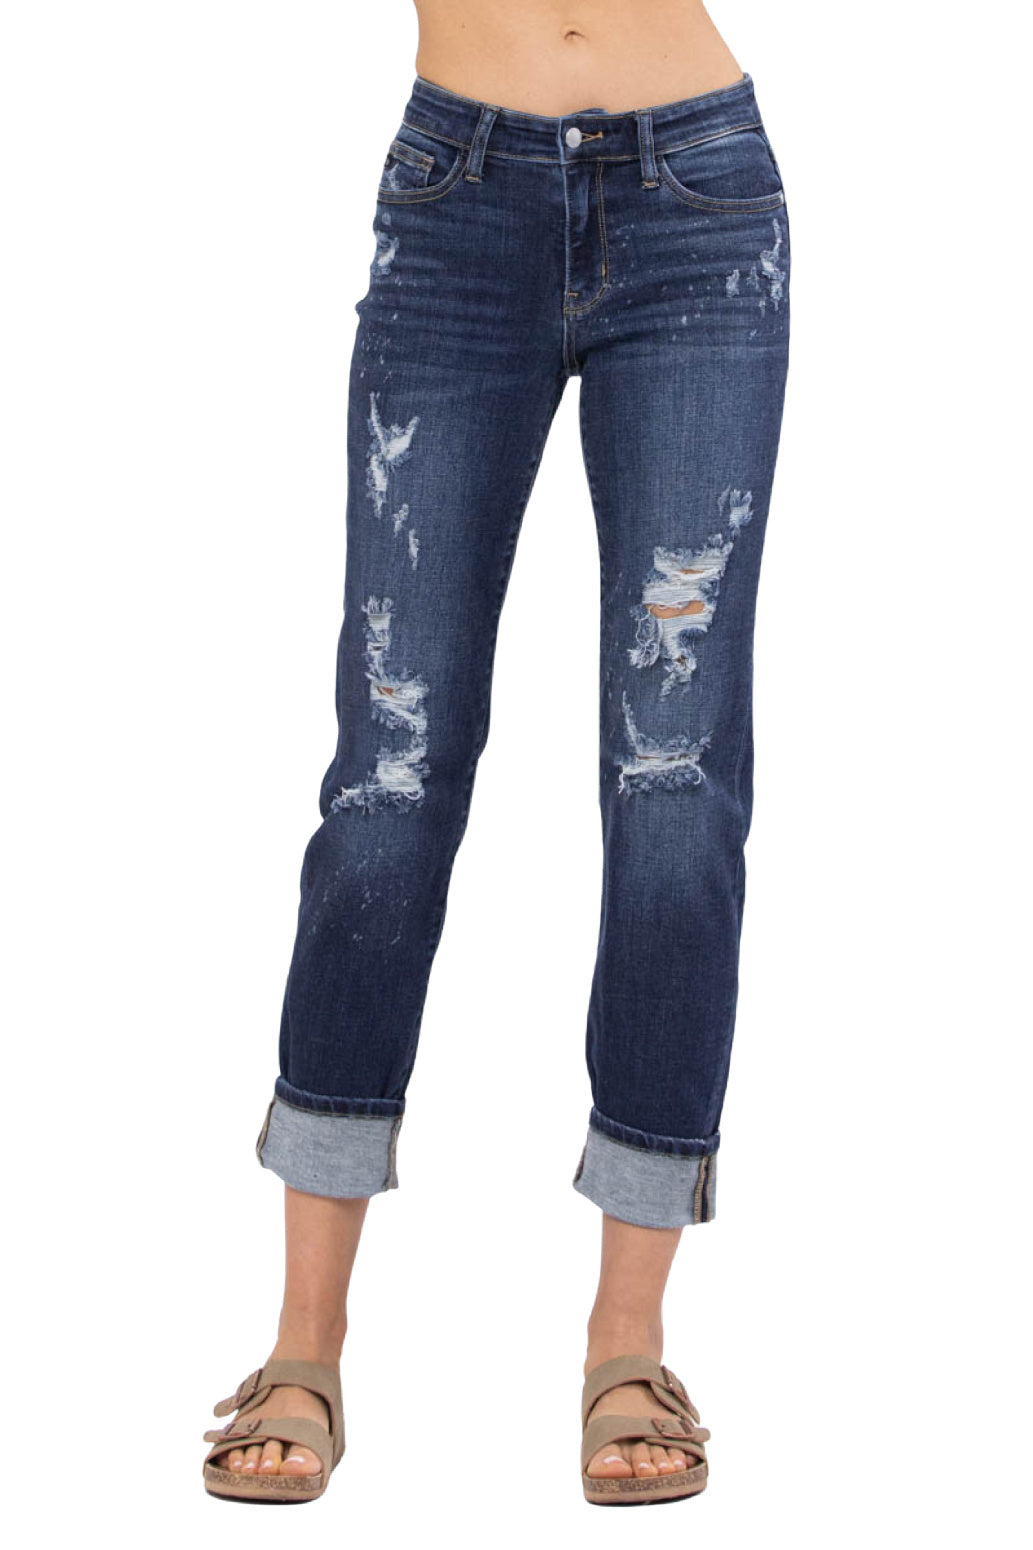 Judy Blue Jeans Bleach Splash Destroyed Boyfriend Style 82198